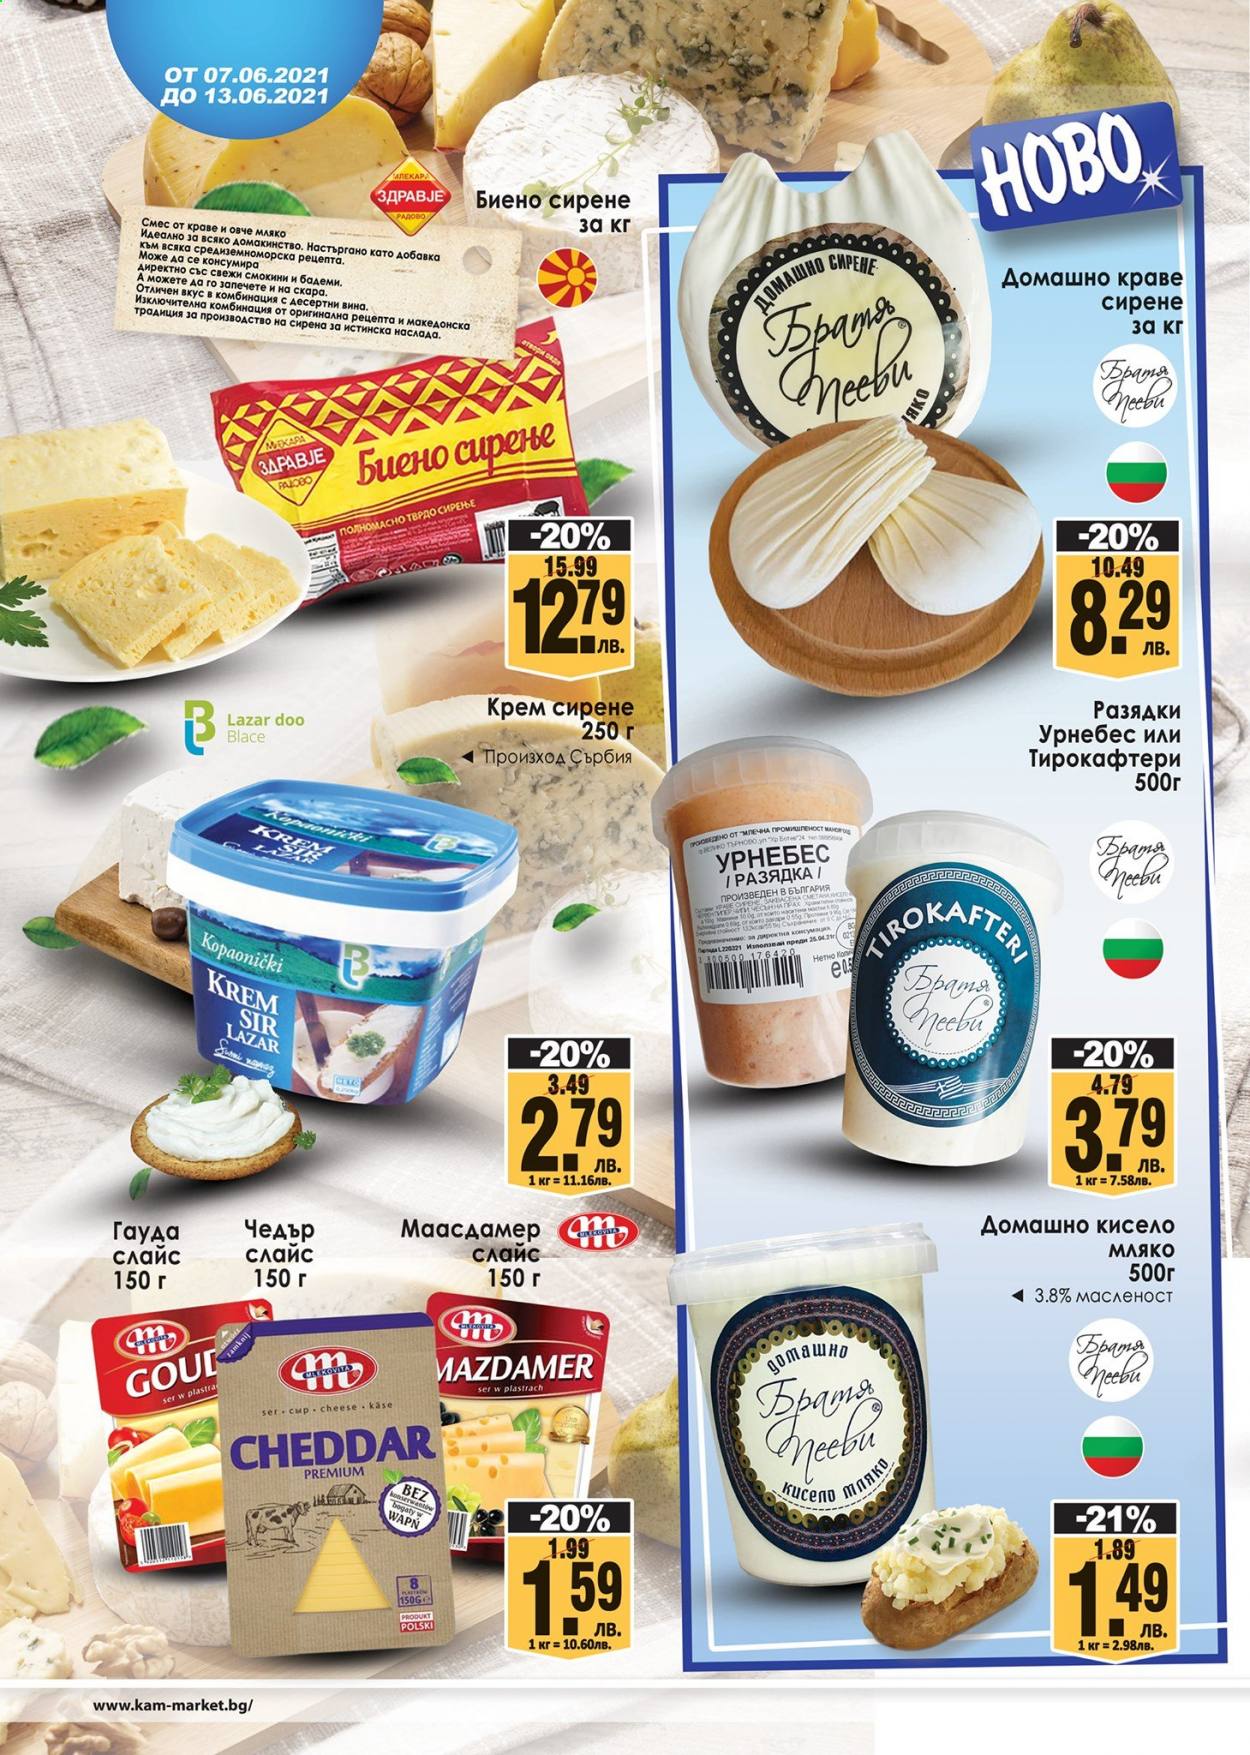 thumbnail - Брошура на КАМ Маркет - 07.06.2021 - 13.06.2021 - Продавани продукти - домашно краве сирене, сирене, Чедър, краве сирене, крем сирене, мляко. Страница 2.